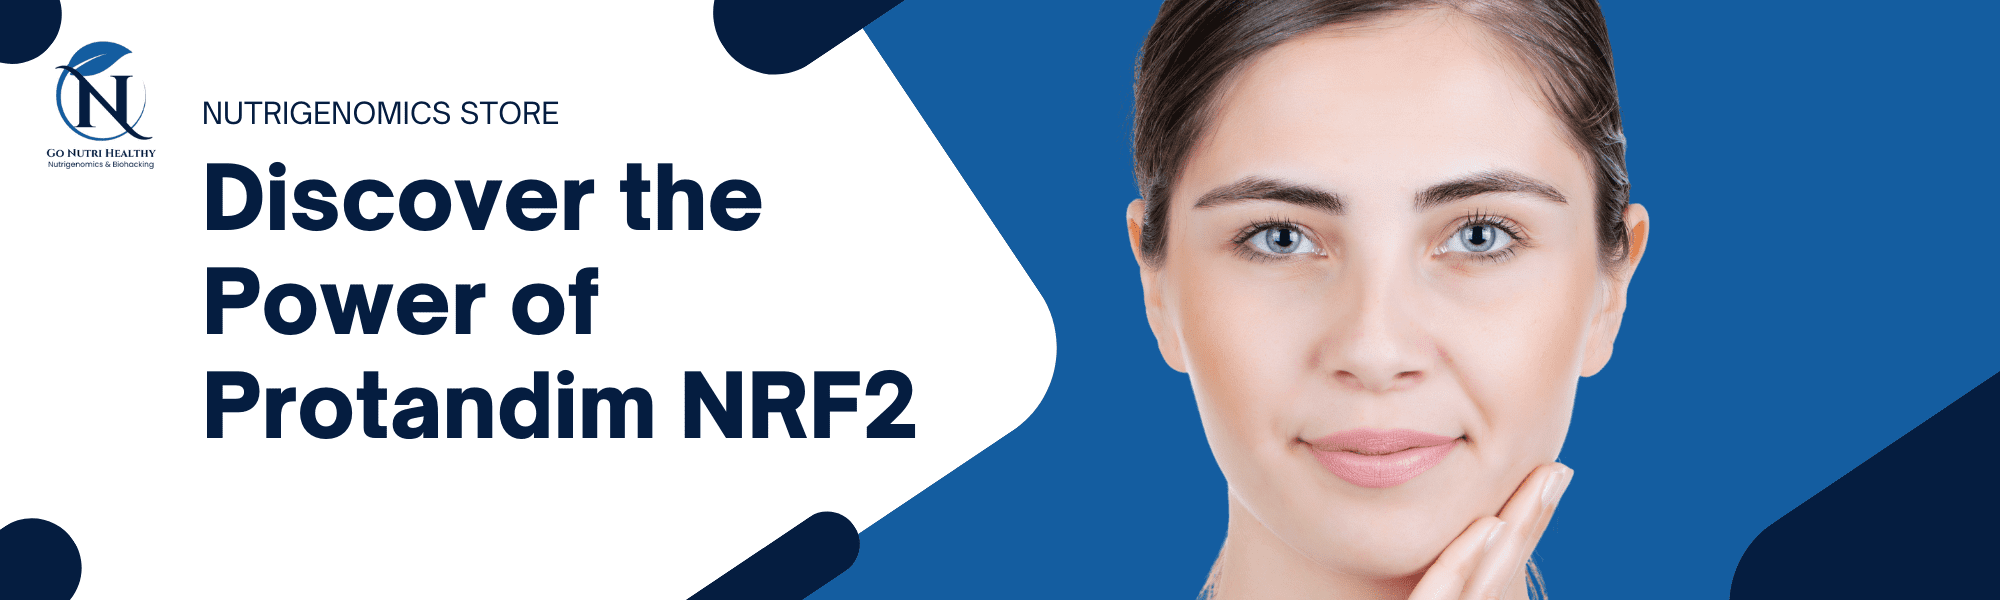 Découvrez la puissance de Protandim NRF2